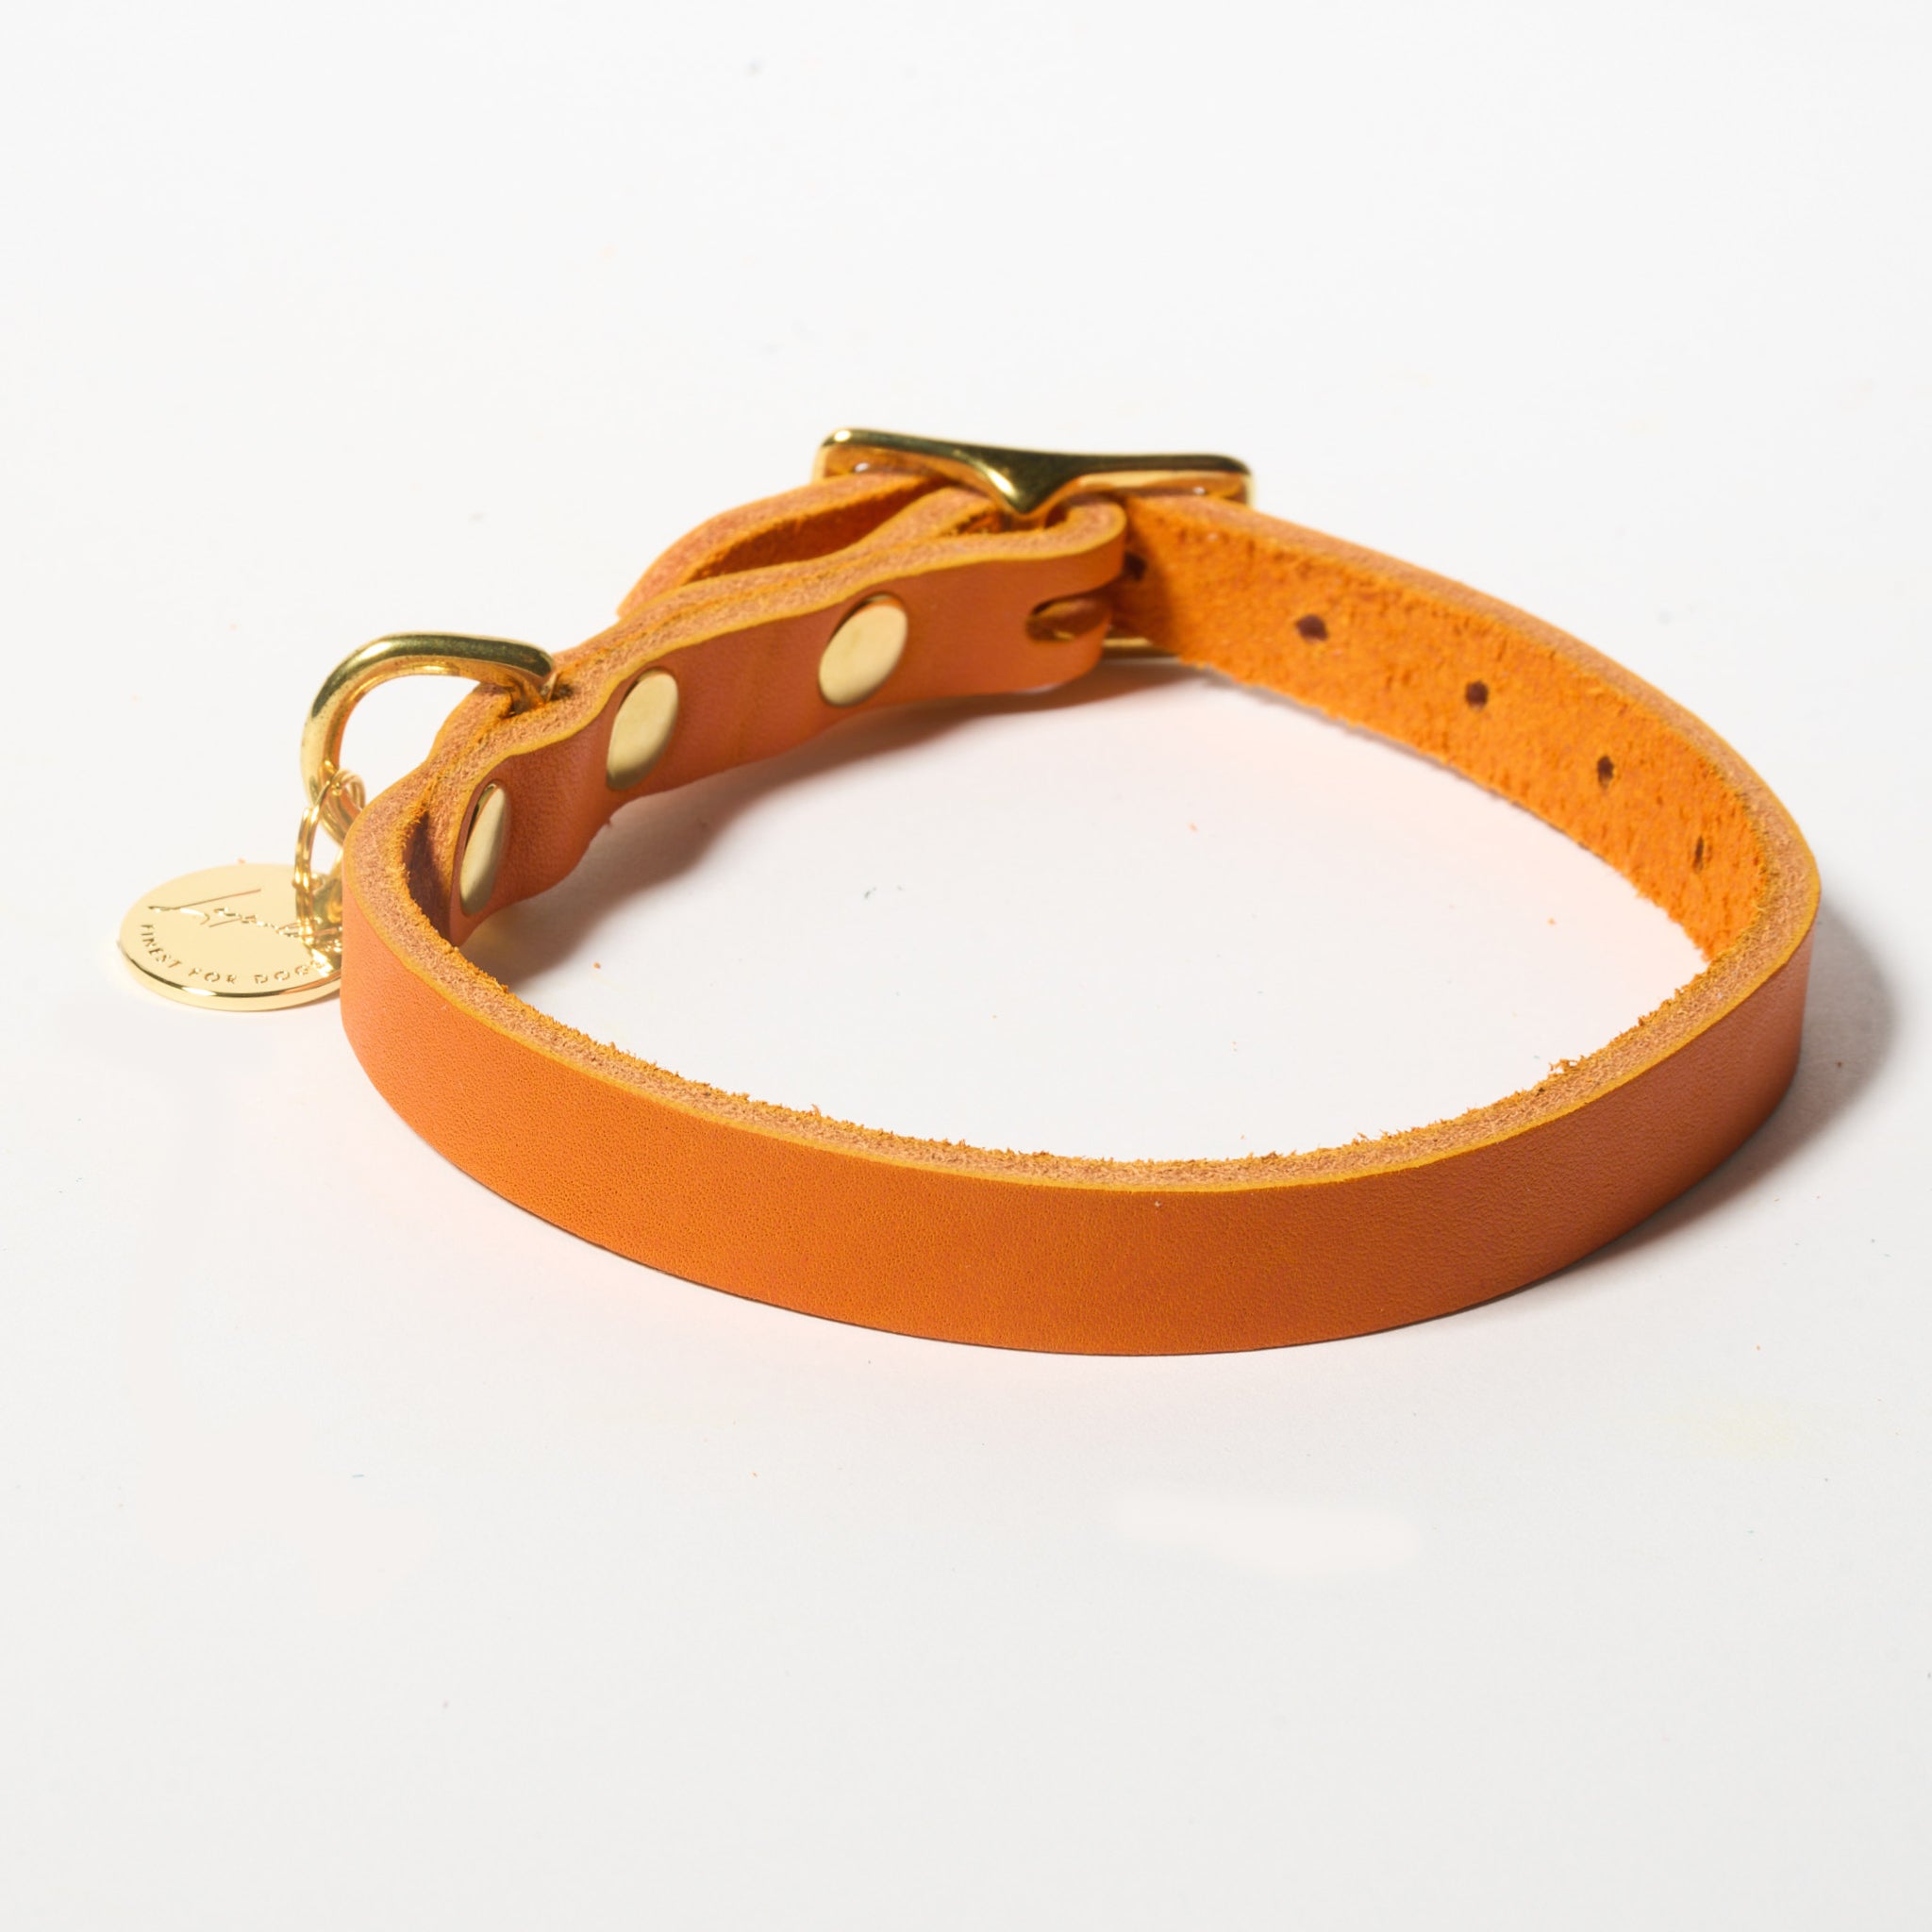 Hundehalsband Fettleder Orange-Gold / 26-32cm - von Leopold's kaufen bei leopolds-finest [orange-gold]